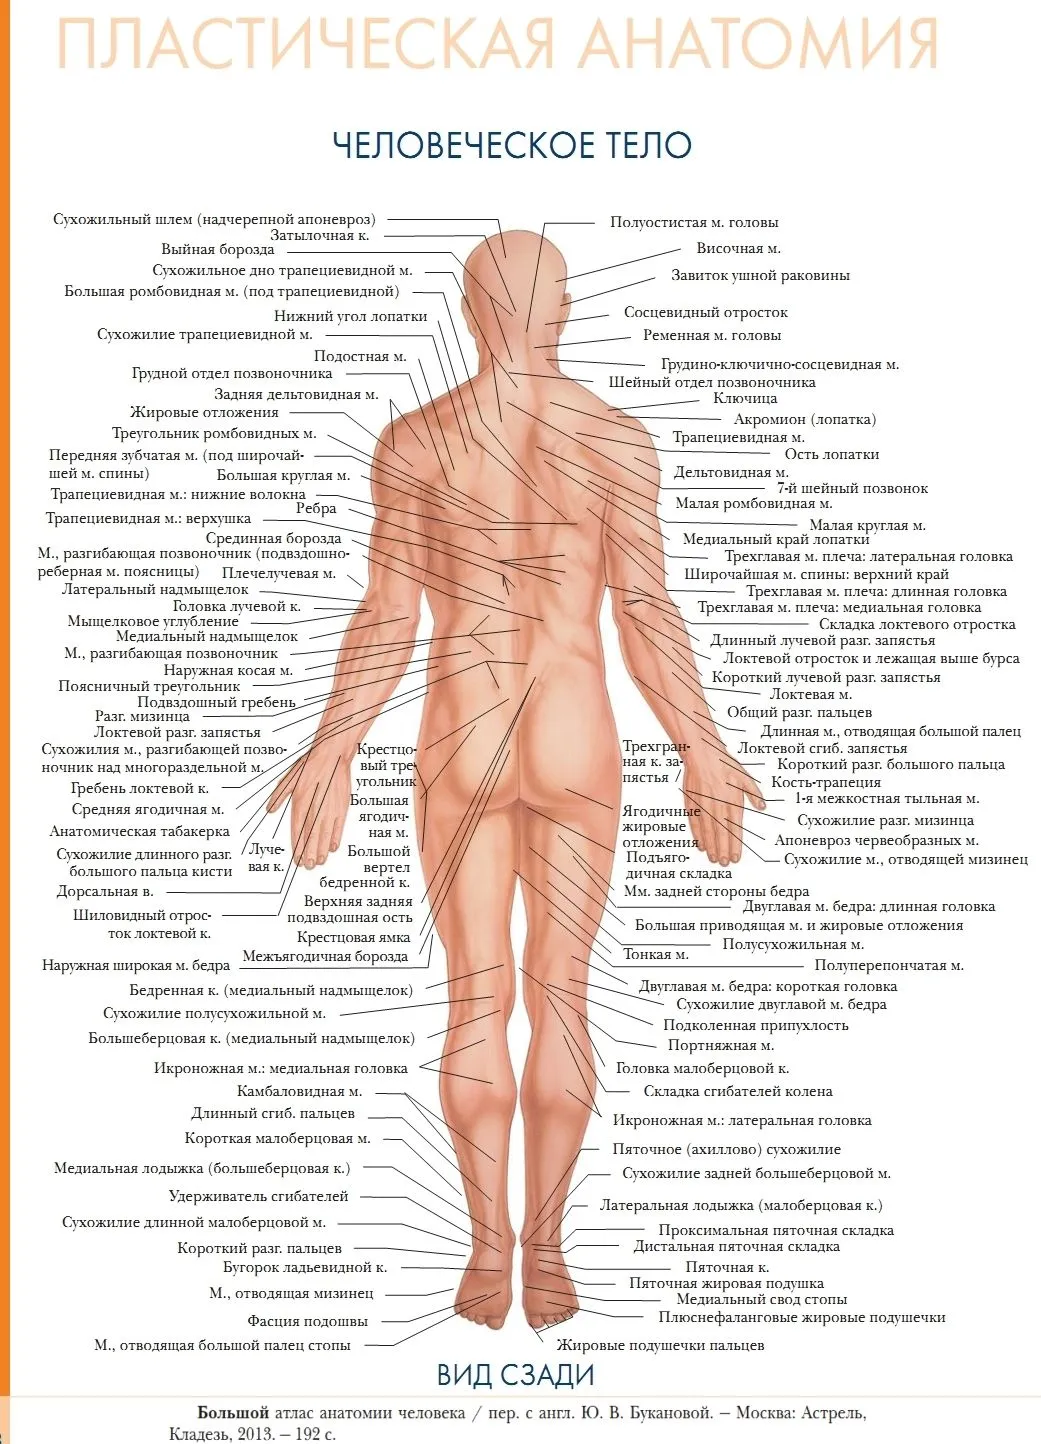 Тела тела тела дата выхода. Большой атлас анатомии человека – Винсент Перез – 2015. Части тела человека анатомия. Название человеческих частей тела.